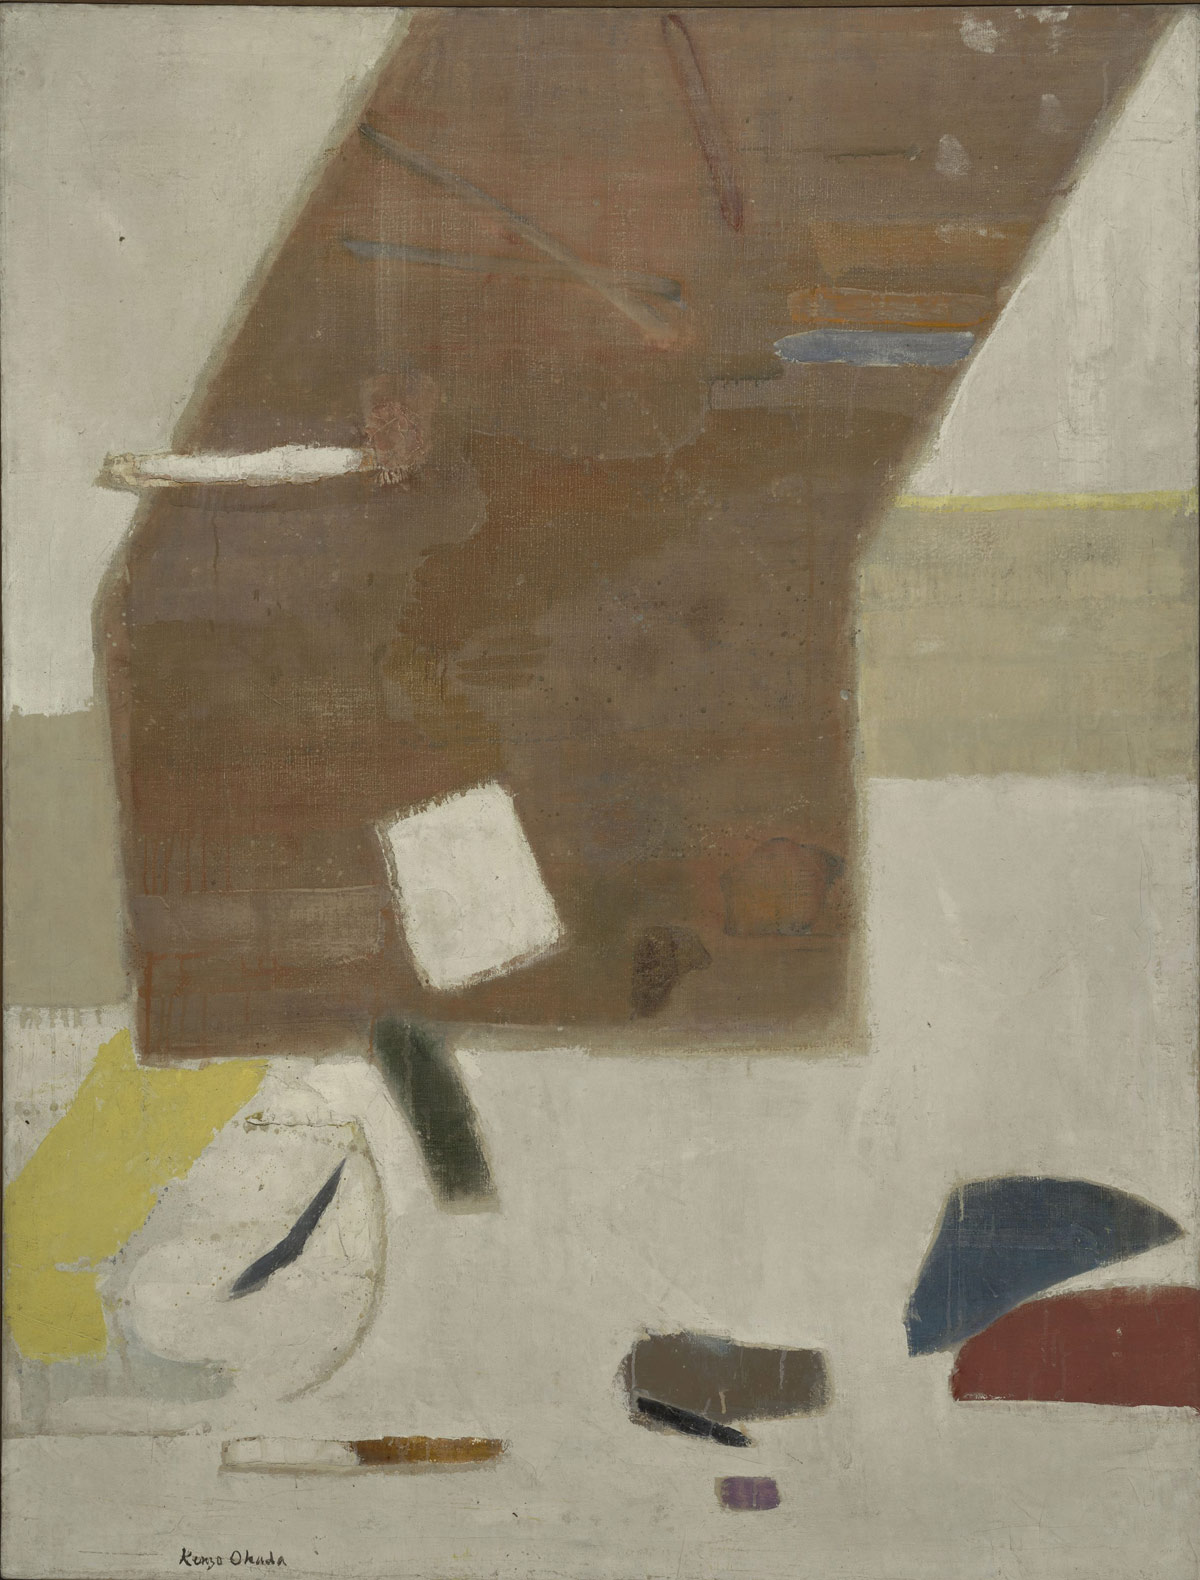 Kenzo Okada, Sopra il bianco (1960; olio su tela, 127,3 x 96,7 cm; Venezia, Collezione Peggy Guggenheim)
